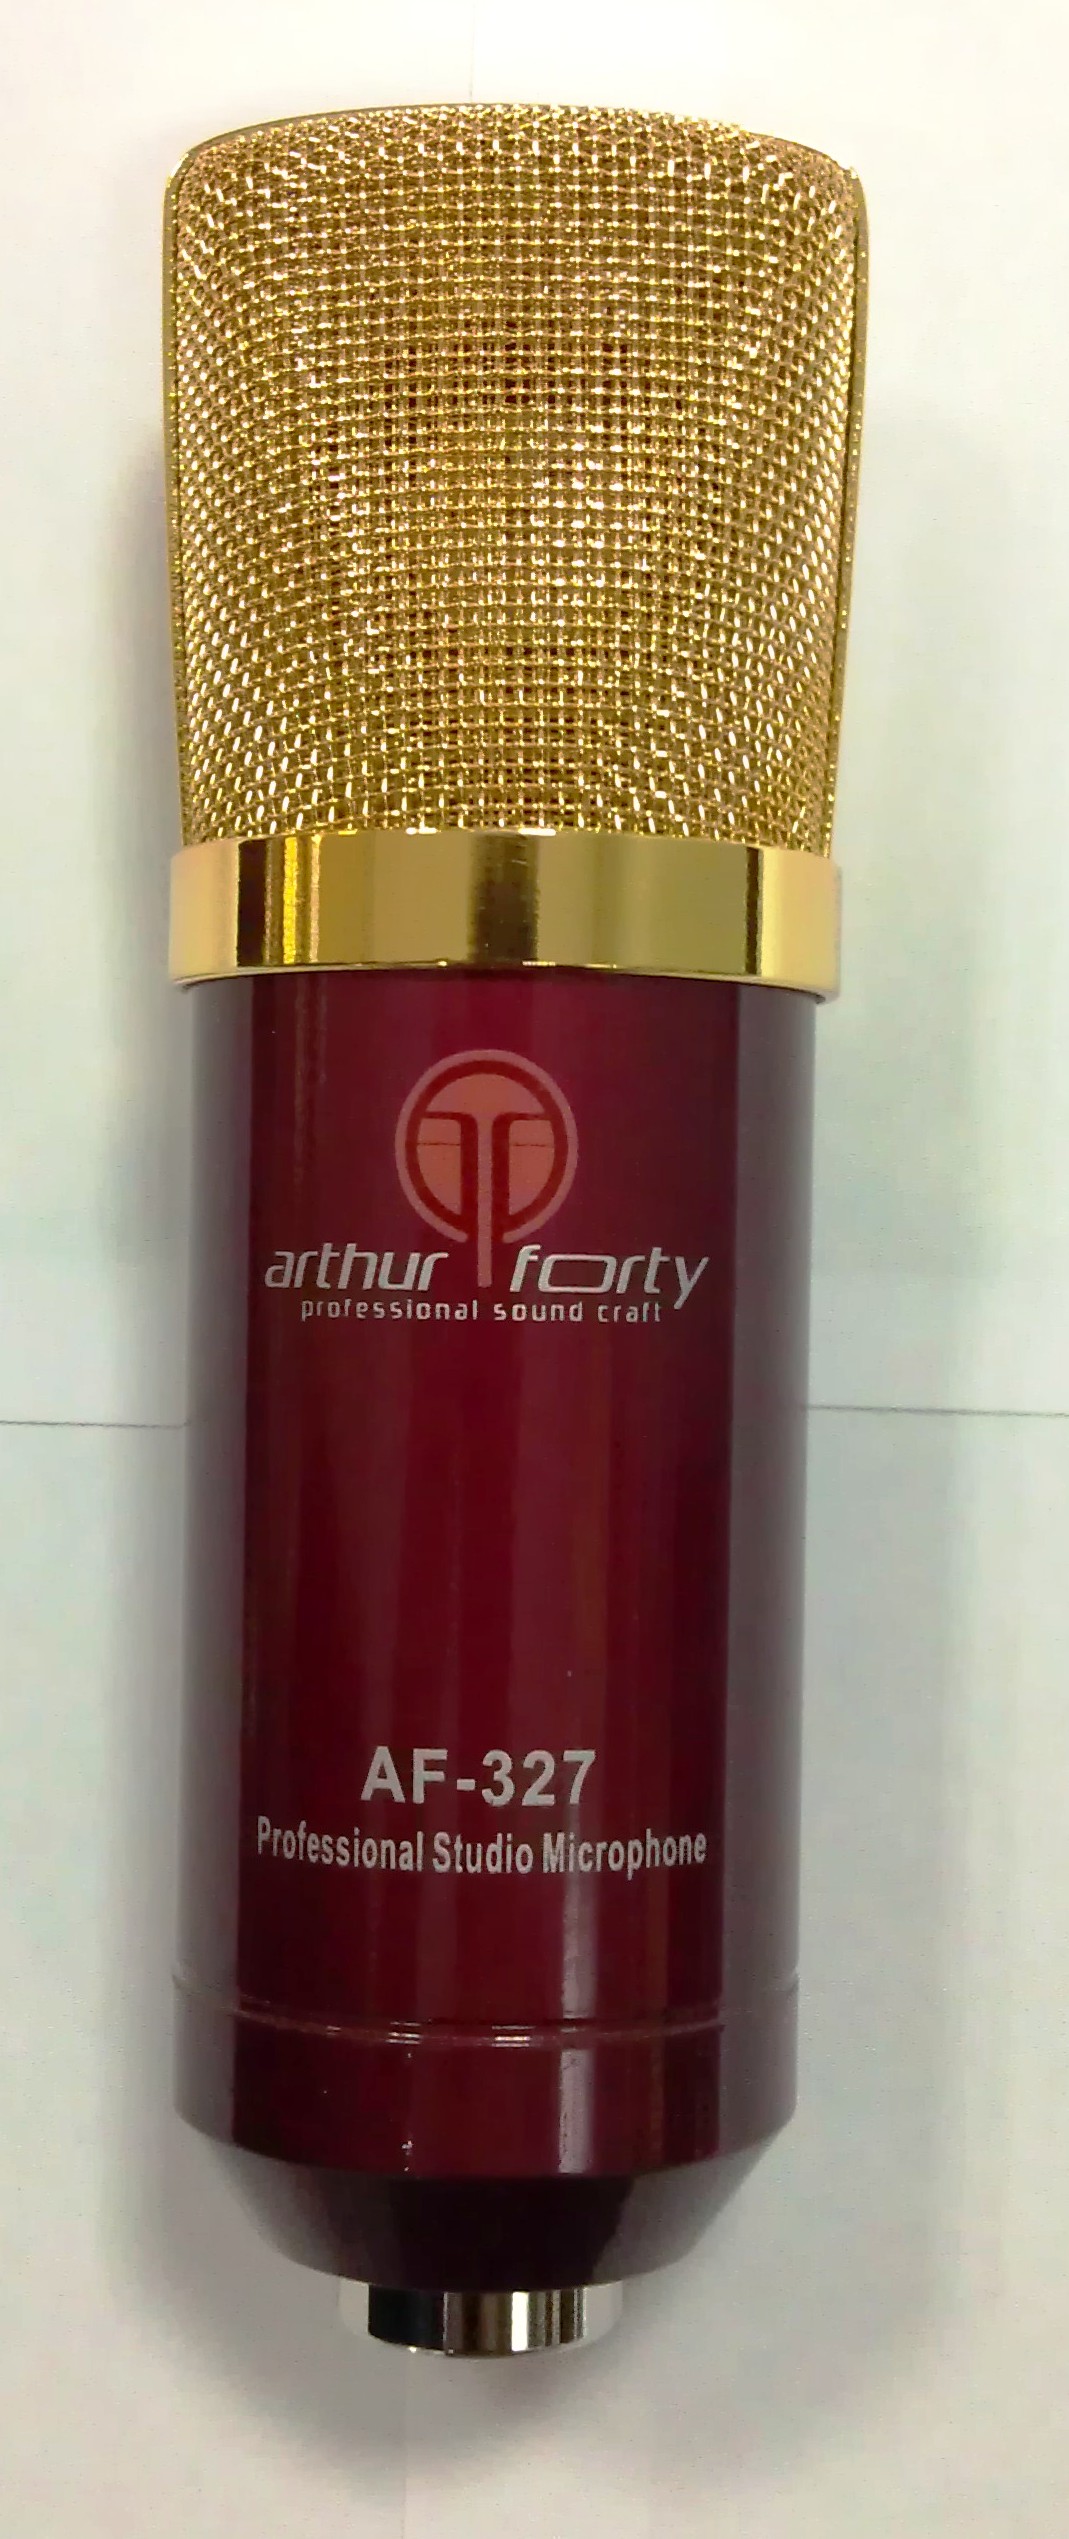 Студийные микрофоны Arthur Forty AF-327 PSC (красный) радиосистемы петличные arthur forty u 9700b psc uhf